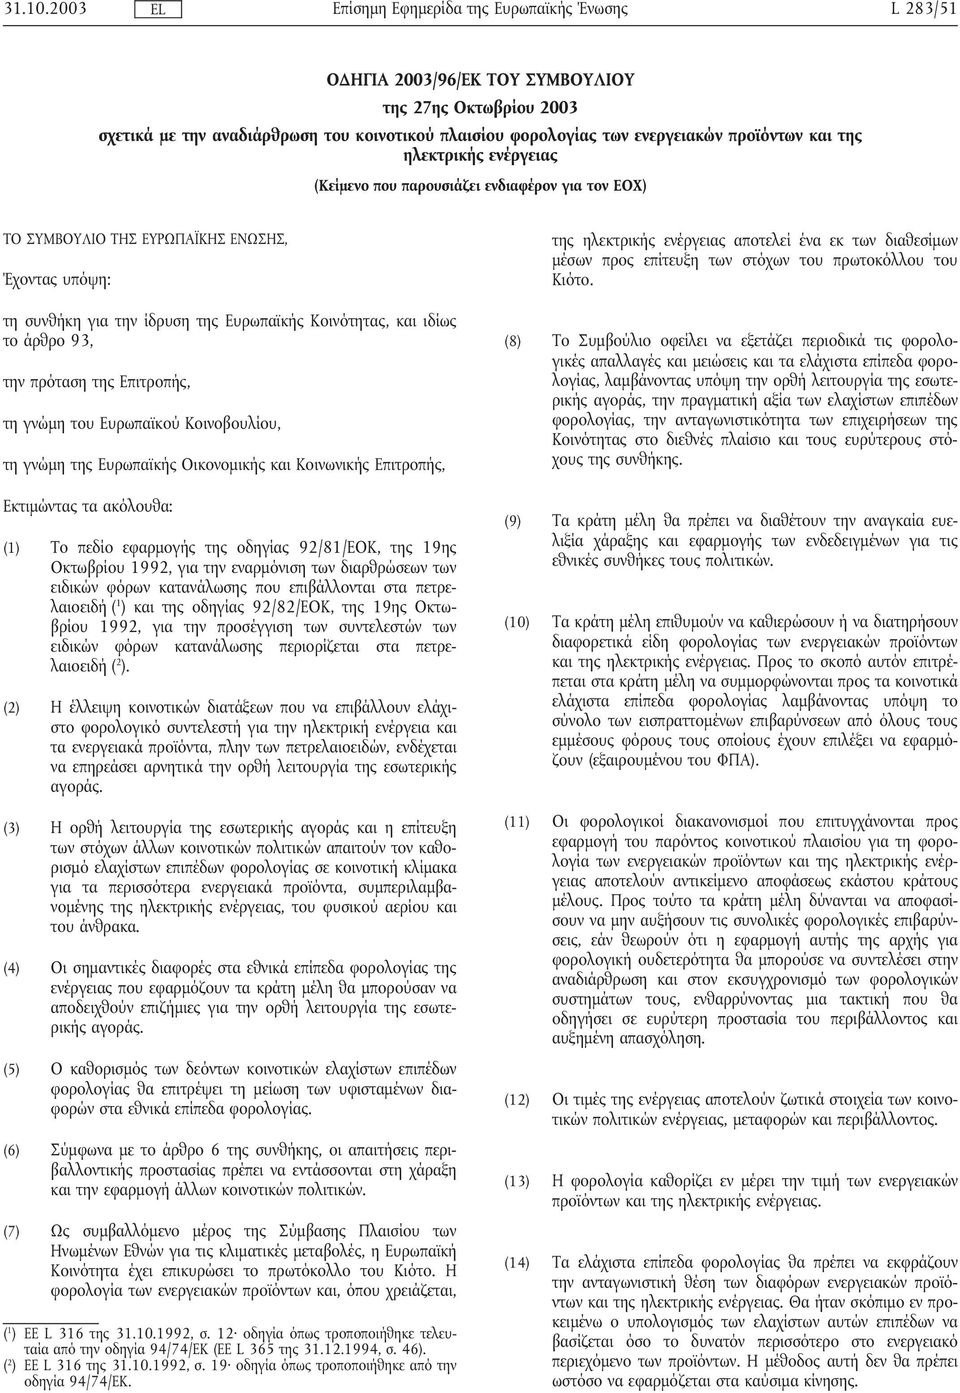 που παρουσιάζει ενδιαφέρον για τον ΕΟΧ) ΤΟ ΣΥΜΒΟΥΛΙΟ ΤΗΣ ΕΥΡΩΠΑΪΚΗΣ ΕΝΩΣΗΣ, Έχοντας υπόψη: τη συνθήκη για την ίδρυση της Ευρωπαϊκής Κοινότητας, και ιδίως το άρθρο 93, την πρόταση της Επιτροπής, τη